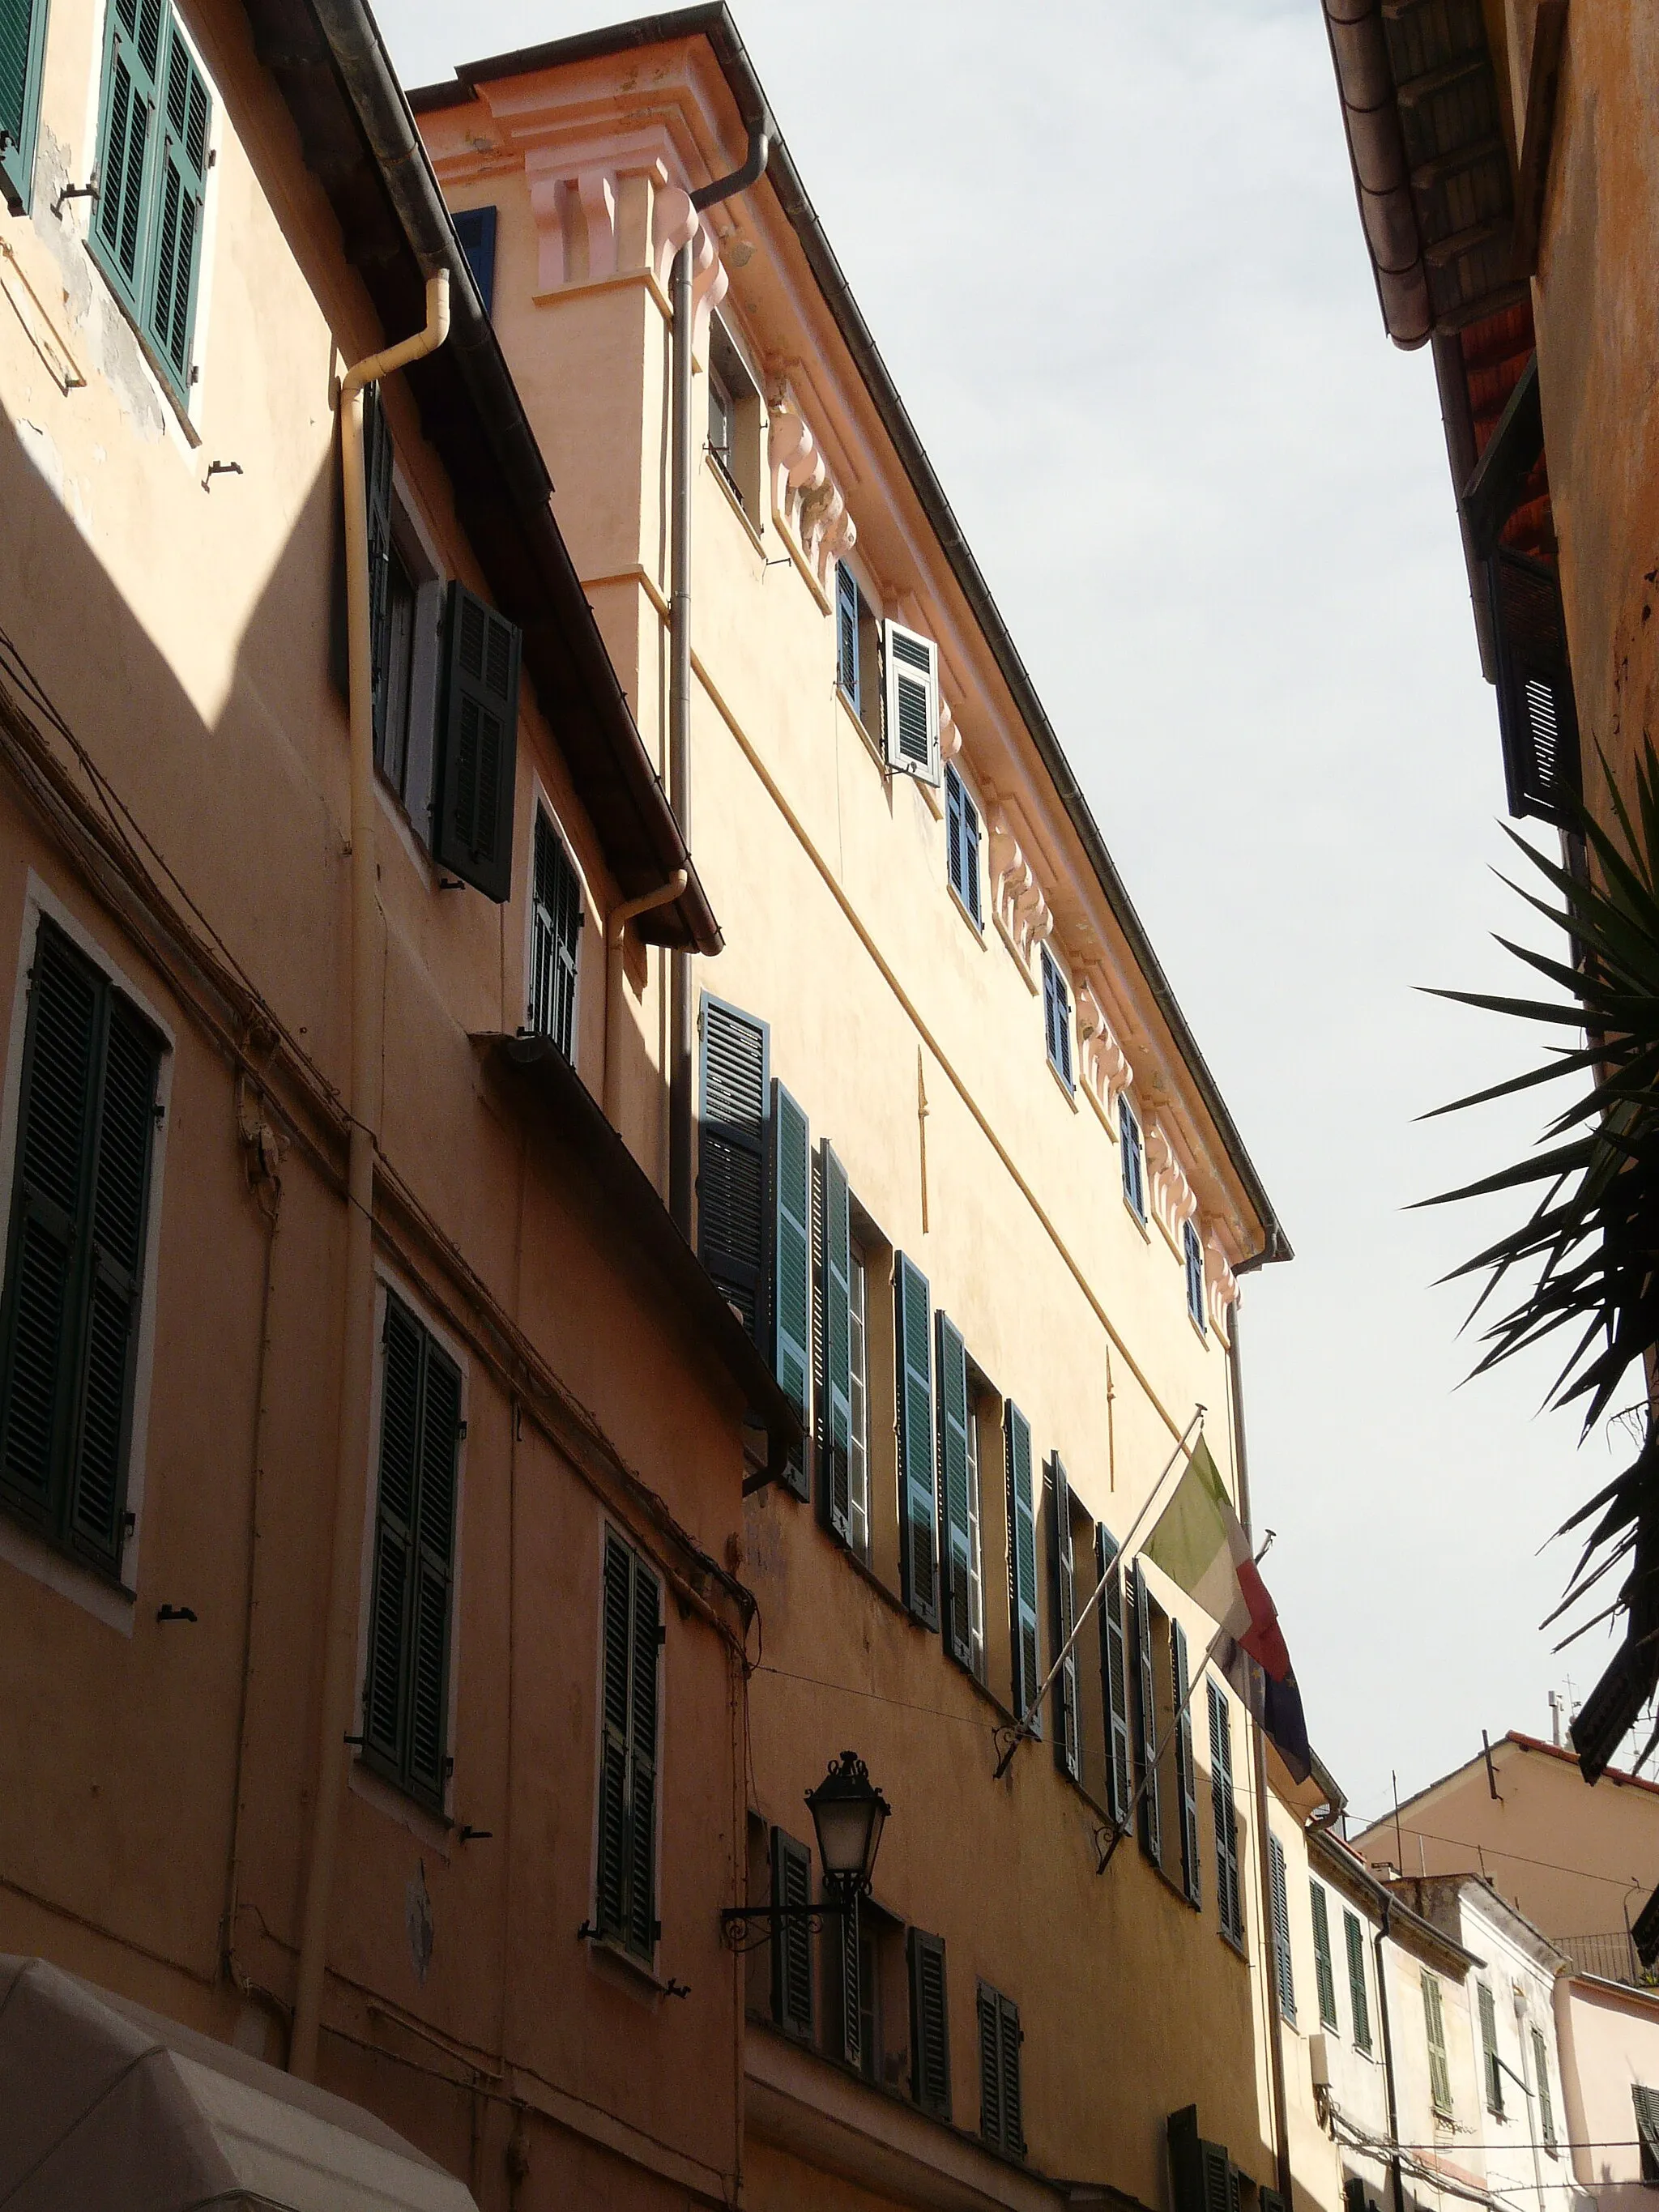 Imagen de Liguria